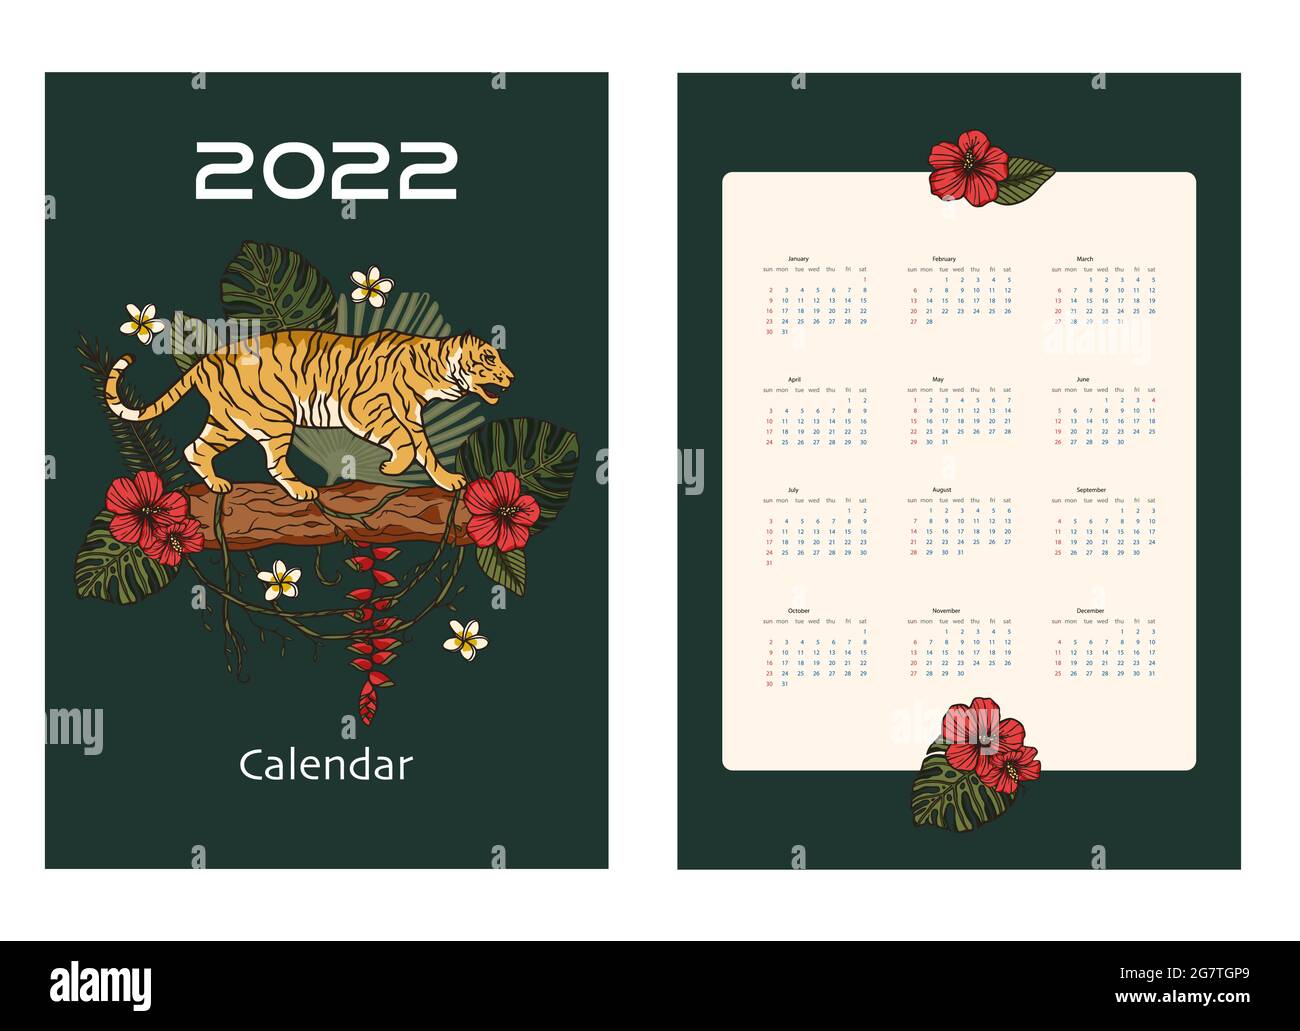 Símbolo Del Año 2022 Para La Decoración Del Calendario. Noviembre 2022. Año  Nuevo Del Tigre Según El Calendario Chino U Oriental. Linda Ilustración  Vectorial En Estilo De Dibujo A Mano Ilustraciones svg